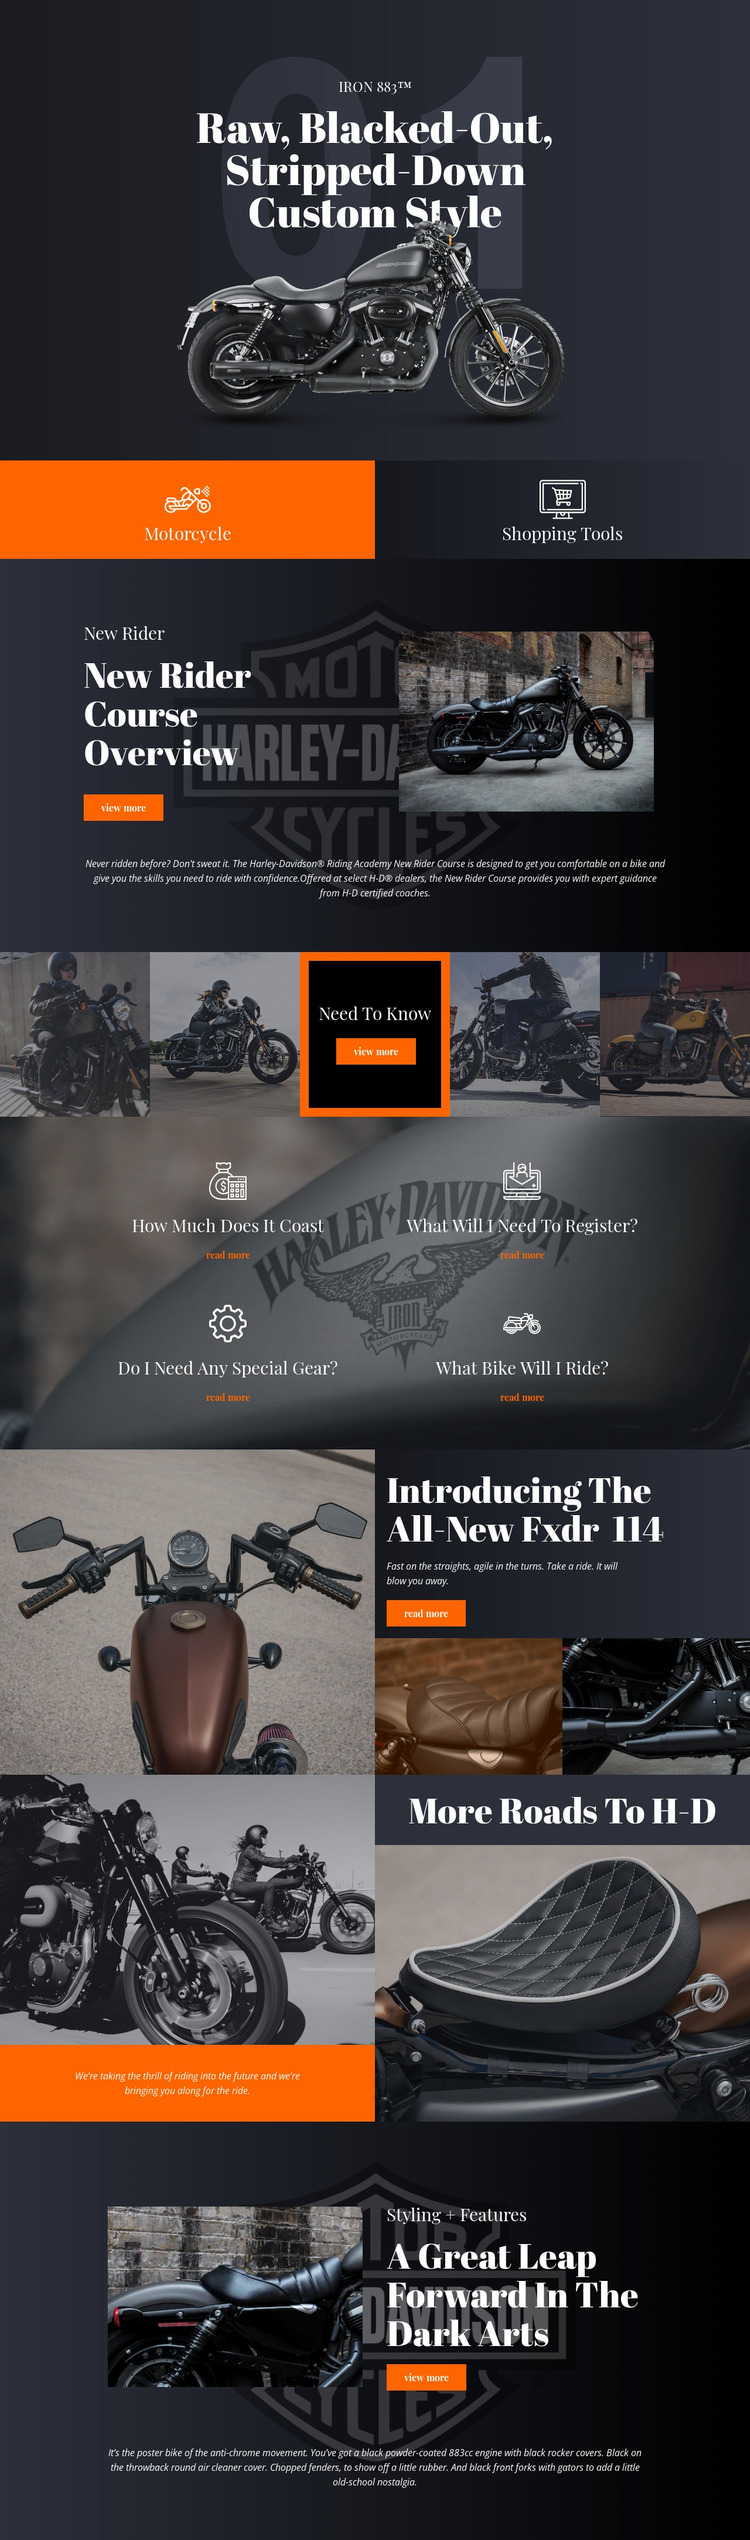 Harley Davidson Website Mockup